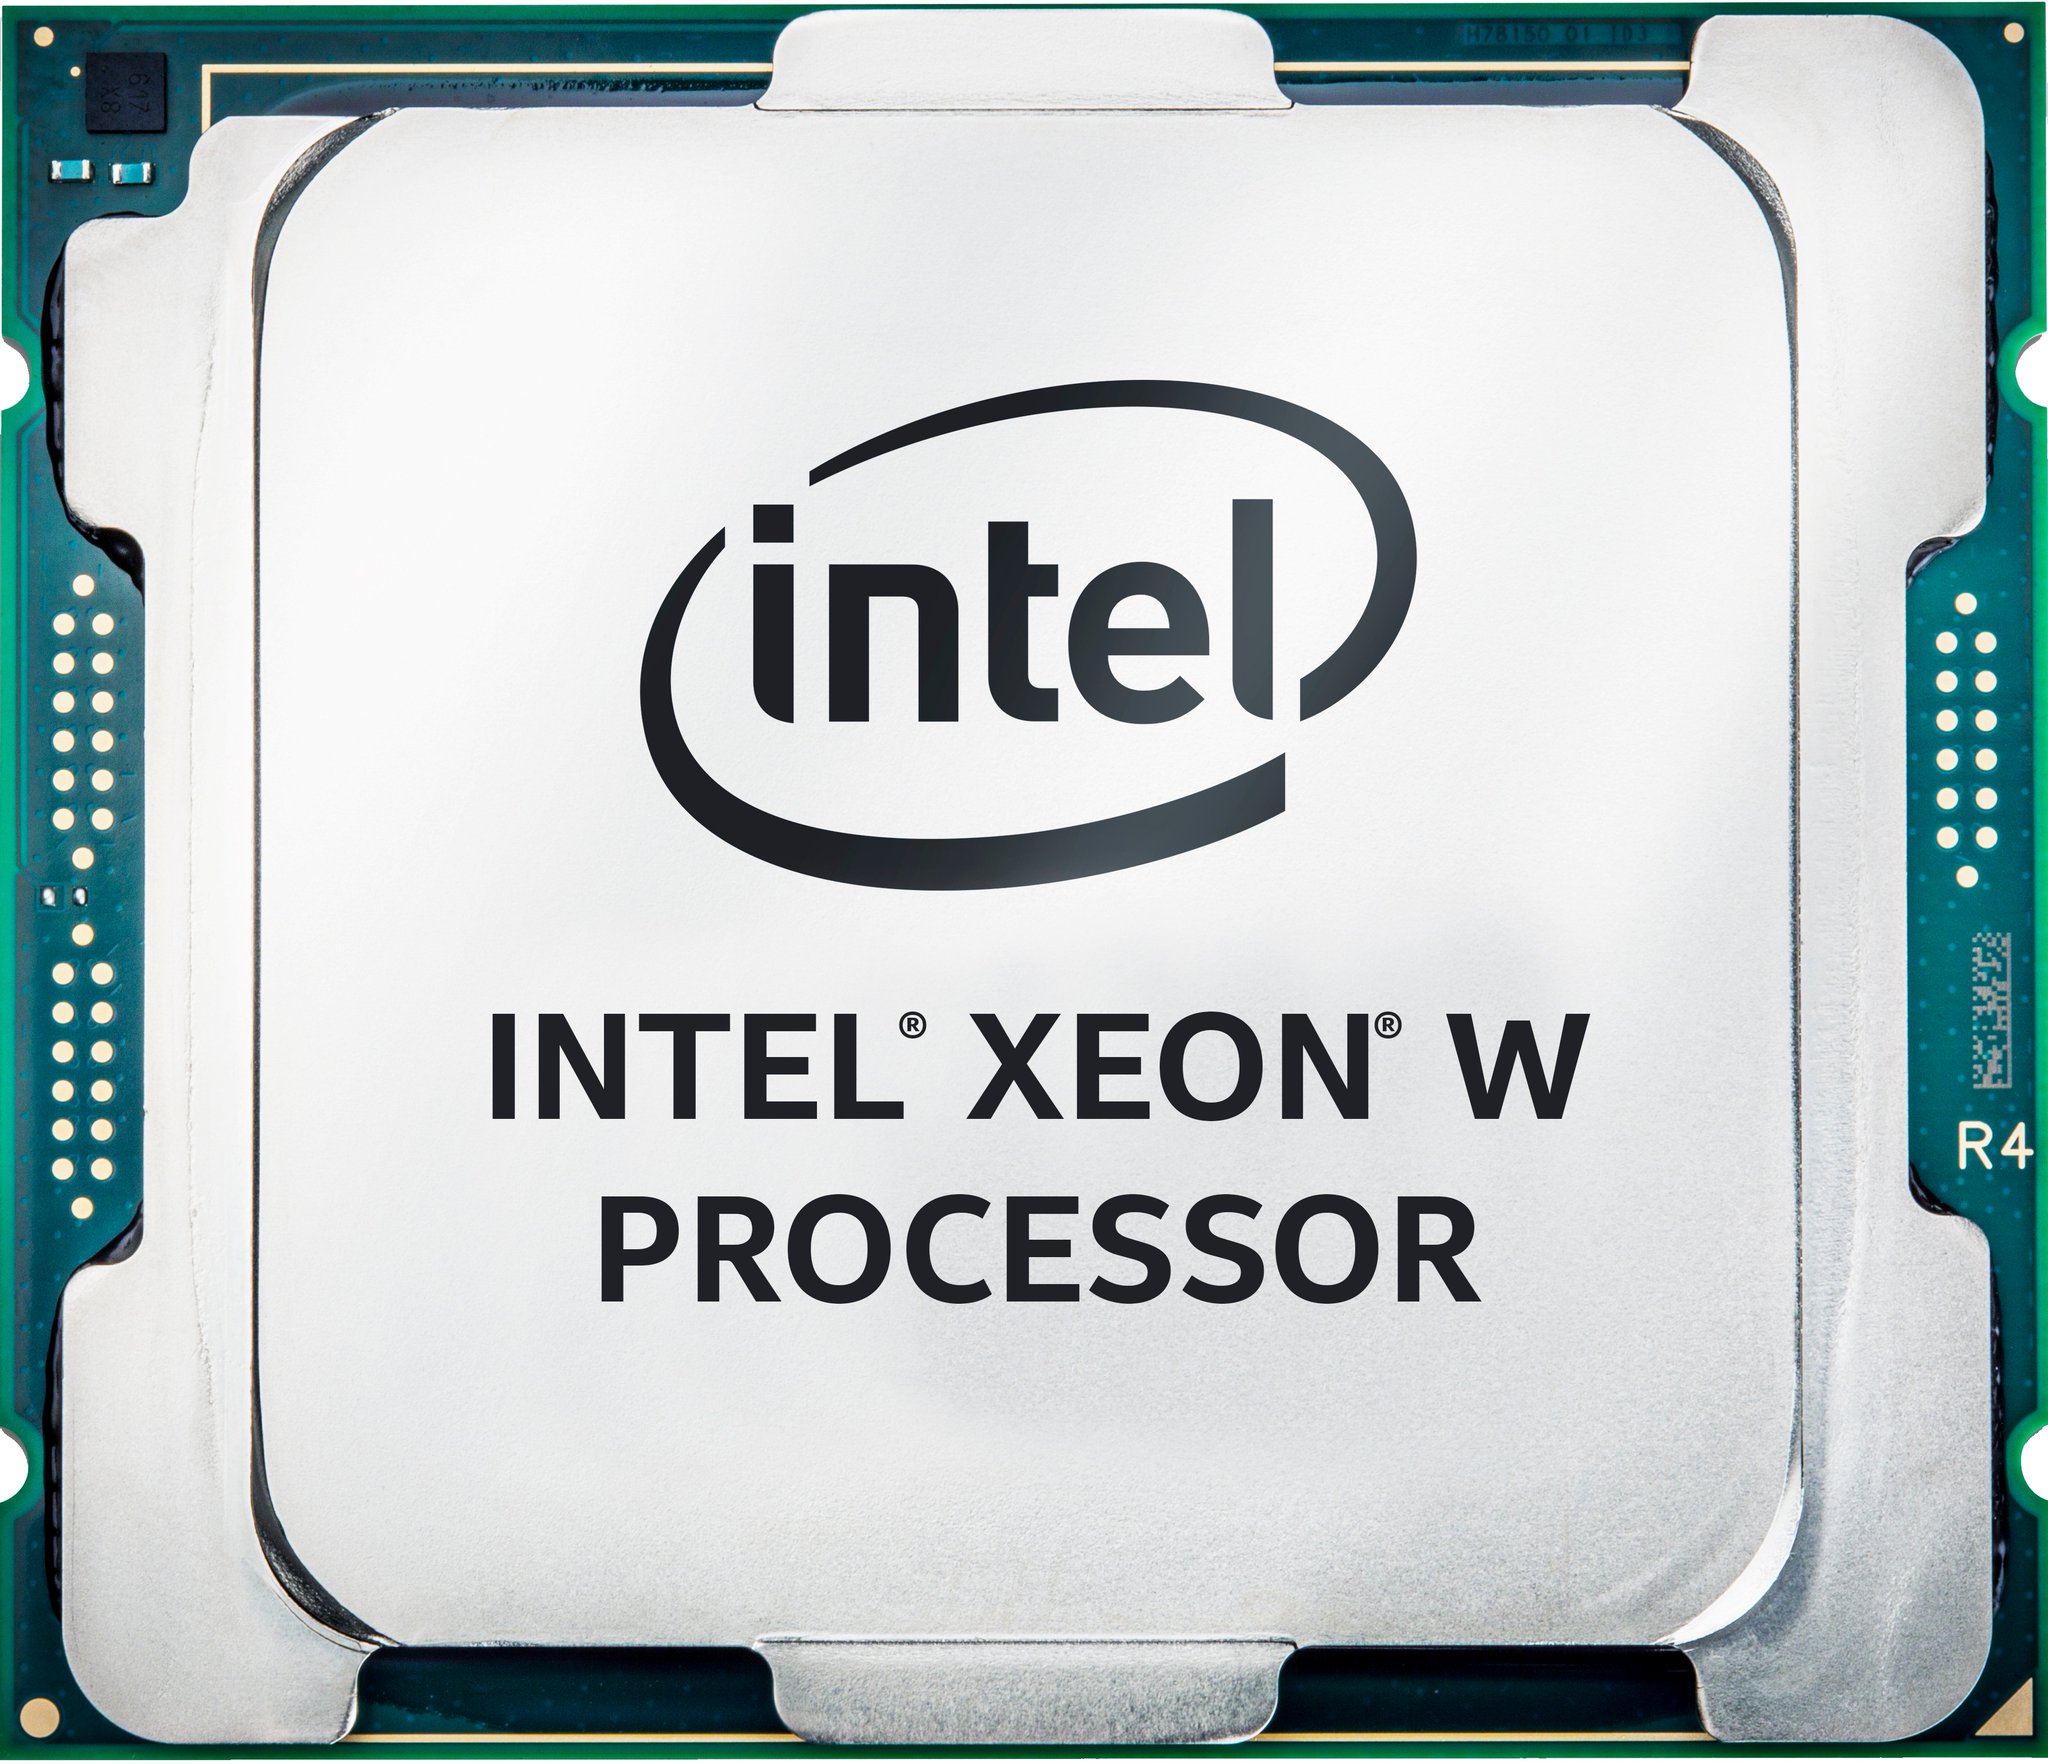 Immagine pubblicata in relazione al seguente contenuto: Intel annuncia i processori Xeon W per workstation mainstream single-socket | Nome immagine: news26944_Intel-Xeon-W_1.jpg